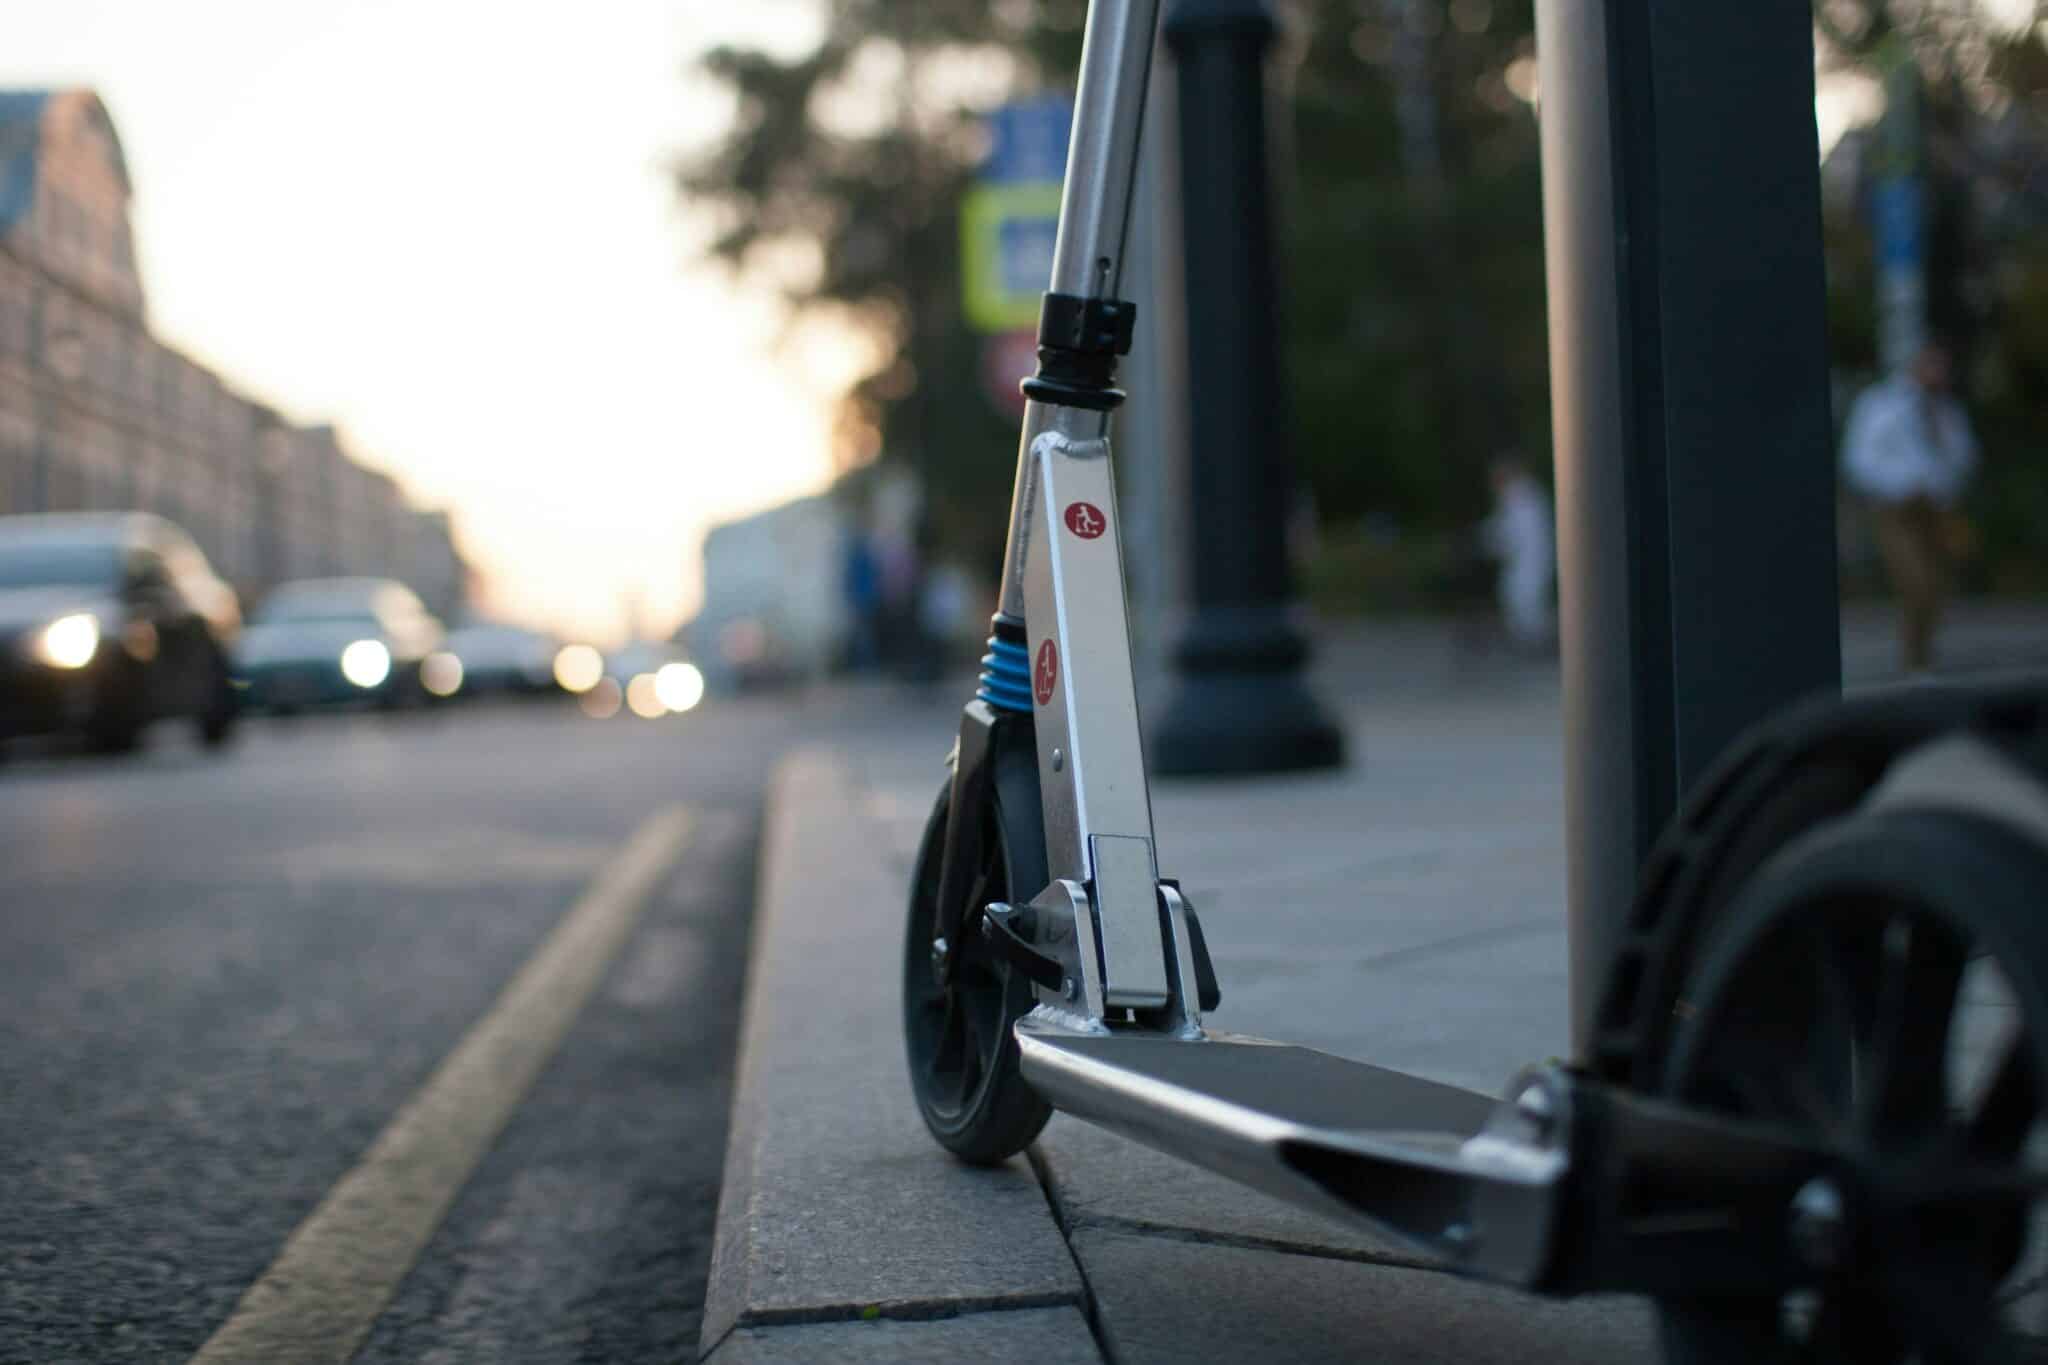 découvrez notre gamme de trottinettes électriques, idéales pour des déplacements écologiques et pratiques en ville.